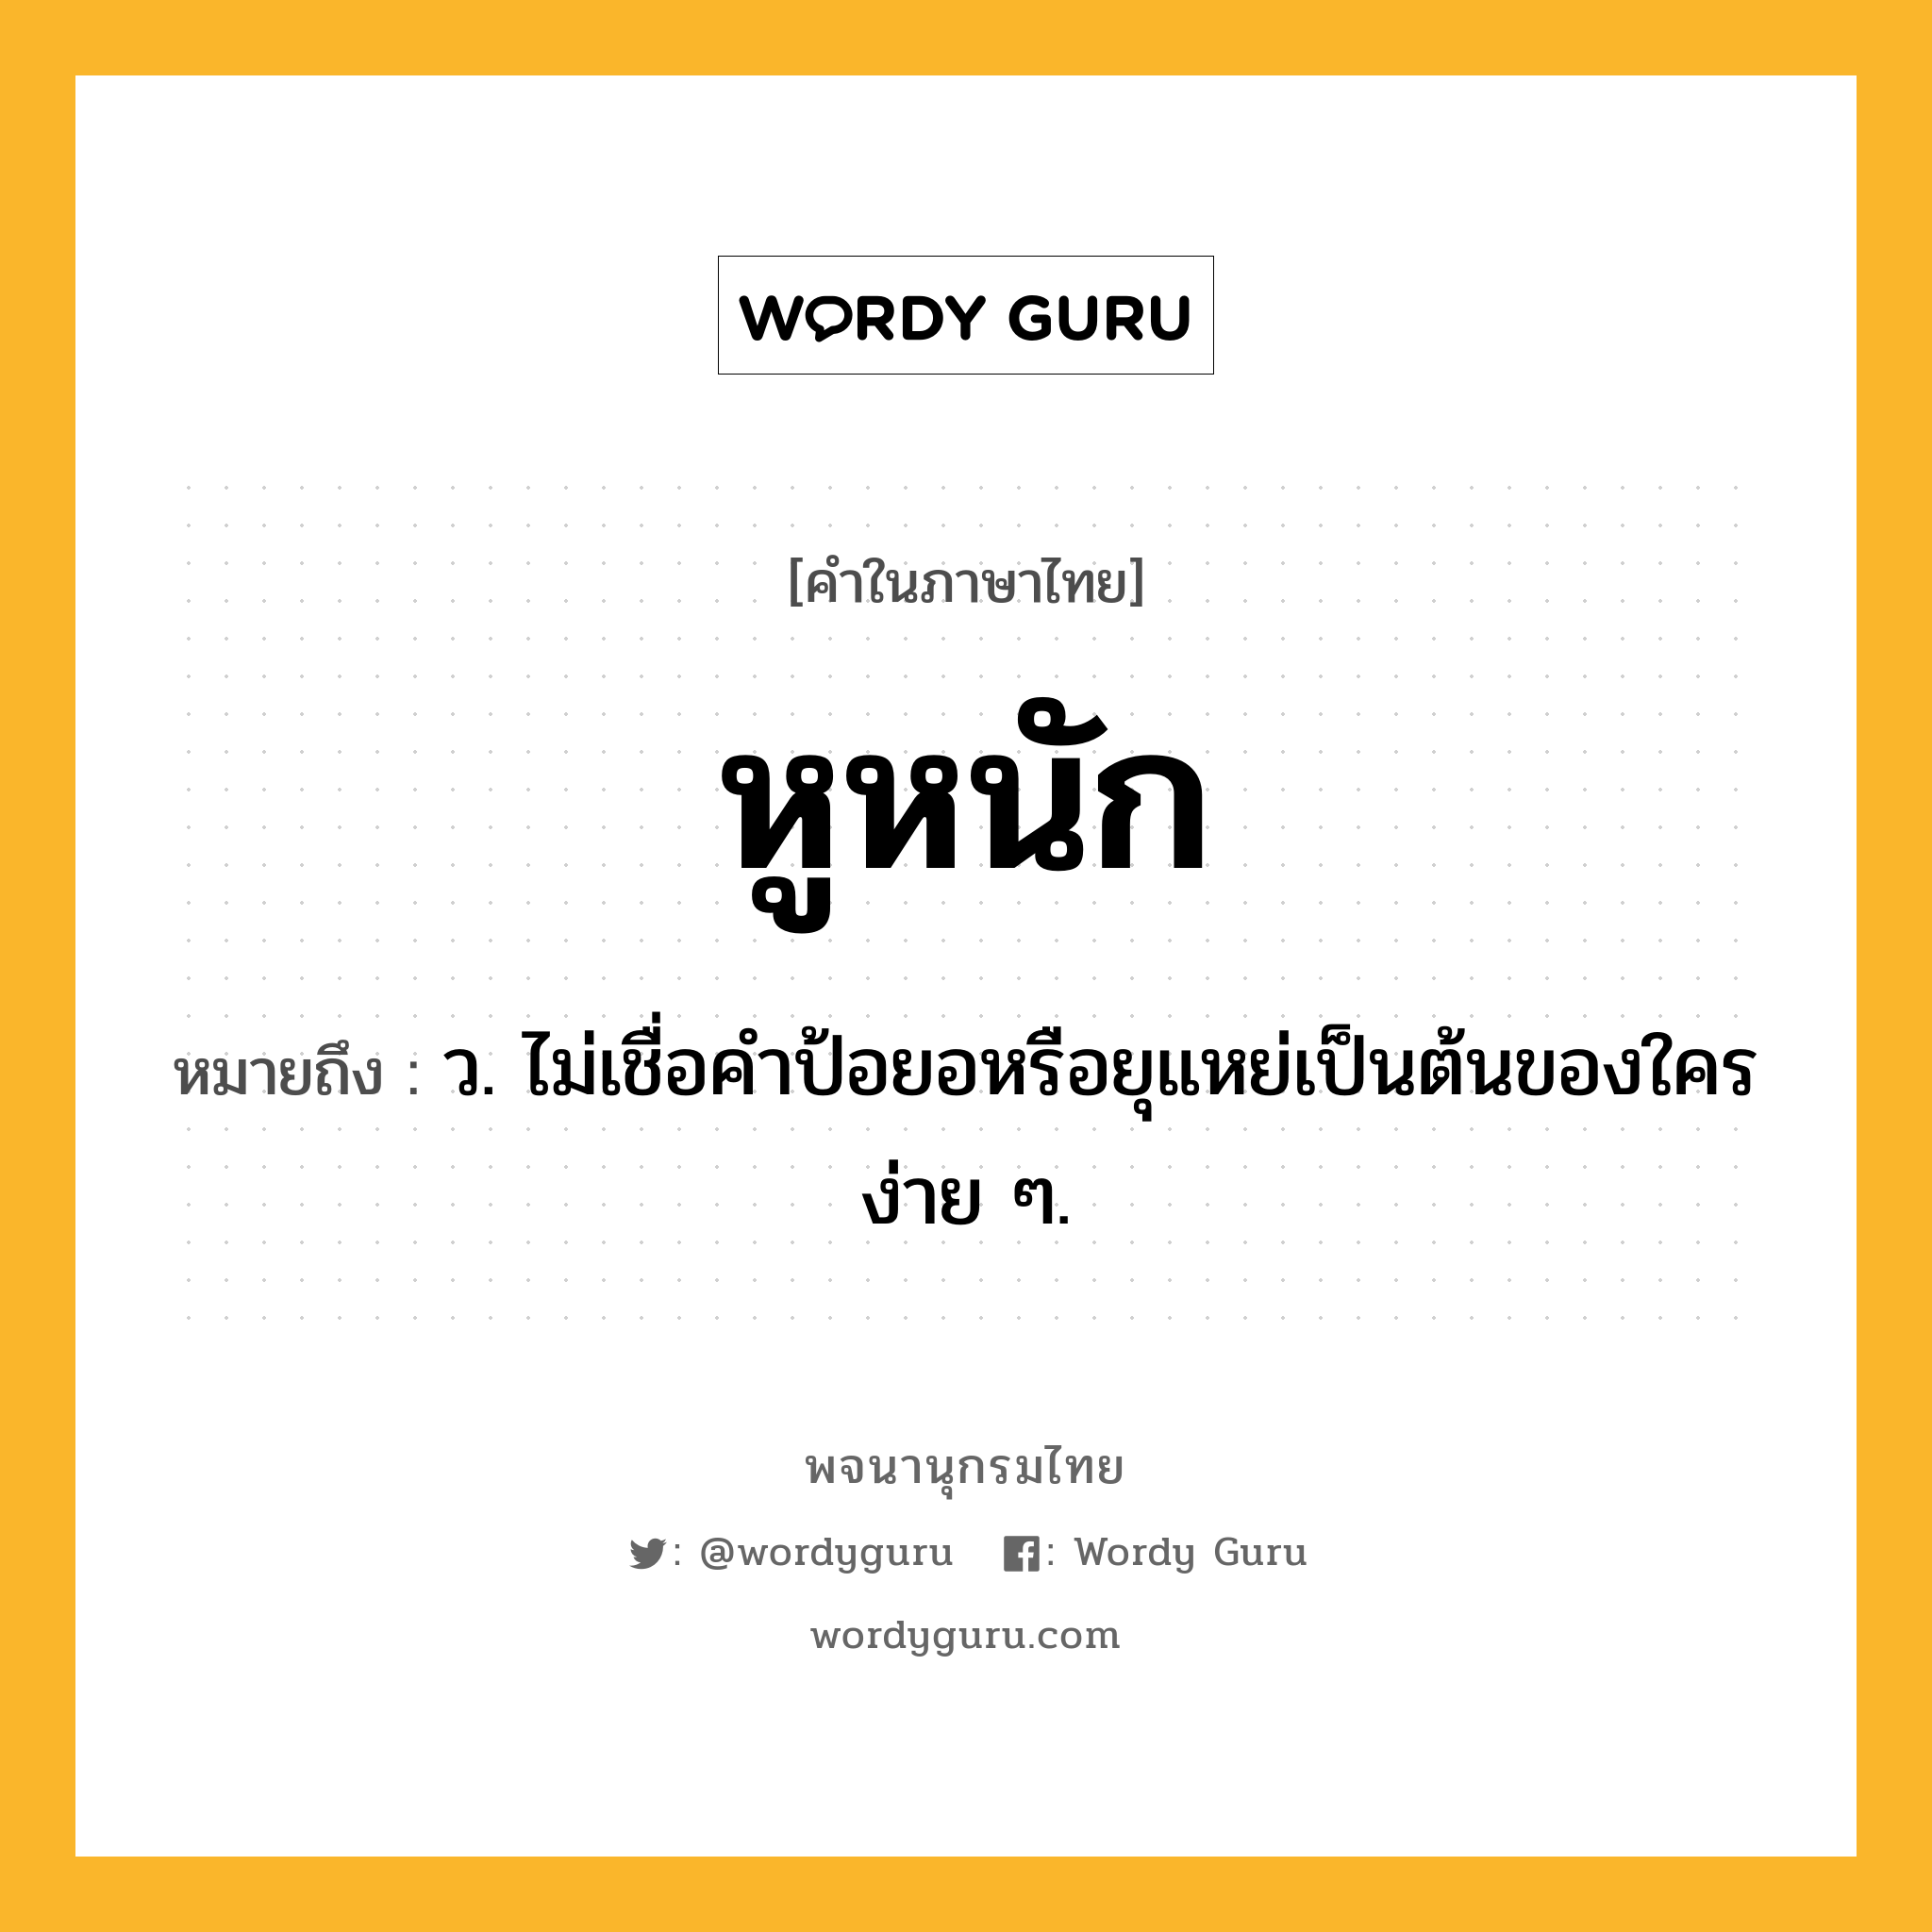 หูหนัก ความหมาย หมายถึงอะไร?, คำในภาษาไทย หูหนัก หมายถึง ว. ไม่เชื่อคำป้อยอหรือยุแหย่เป็นต้นของใครง่าย ๆ.